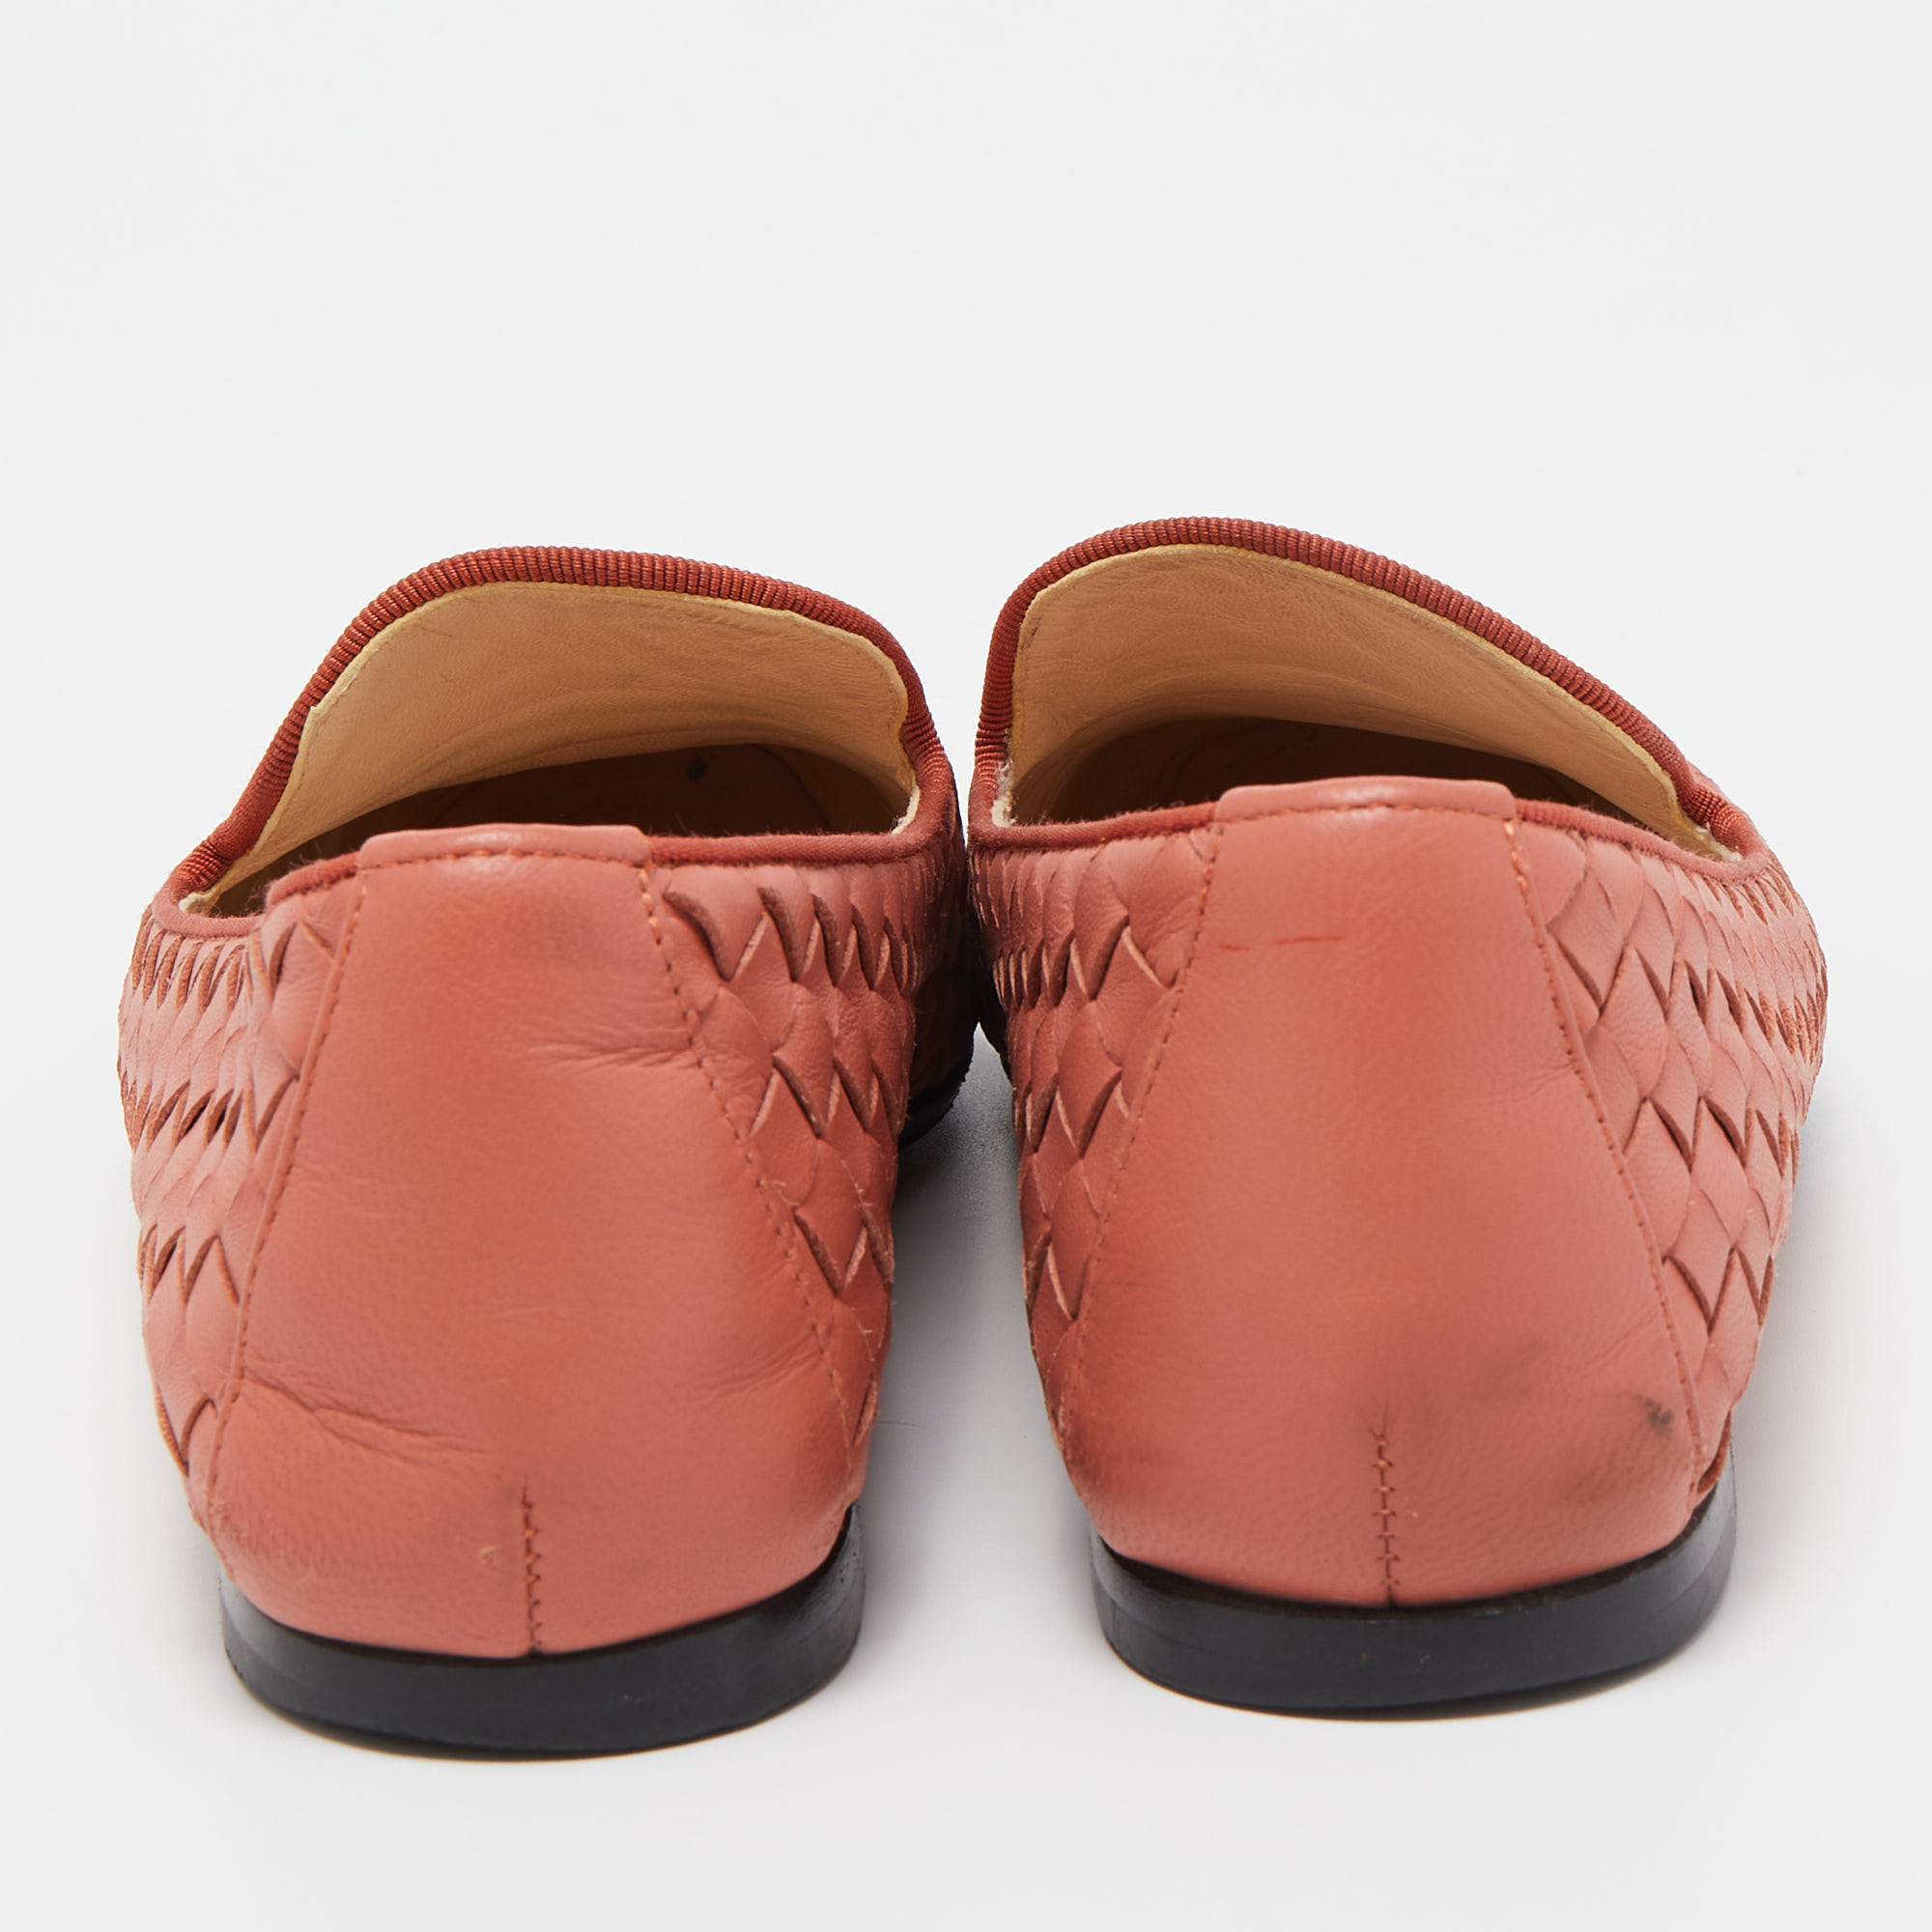 Bottega Veneta Pink Intrecciato Leather Smoking Slippers Size 36.5